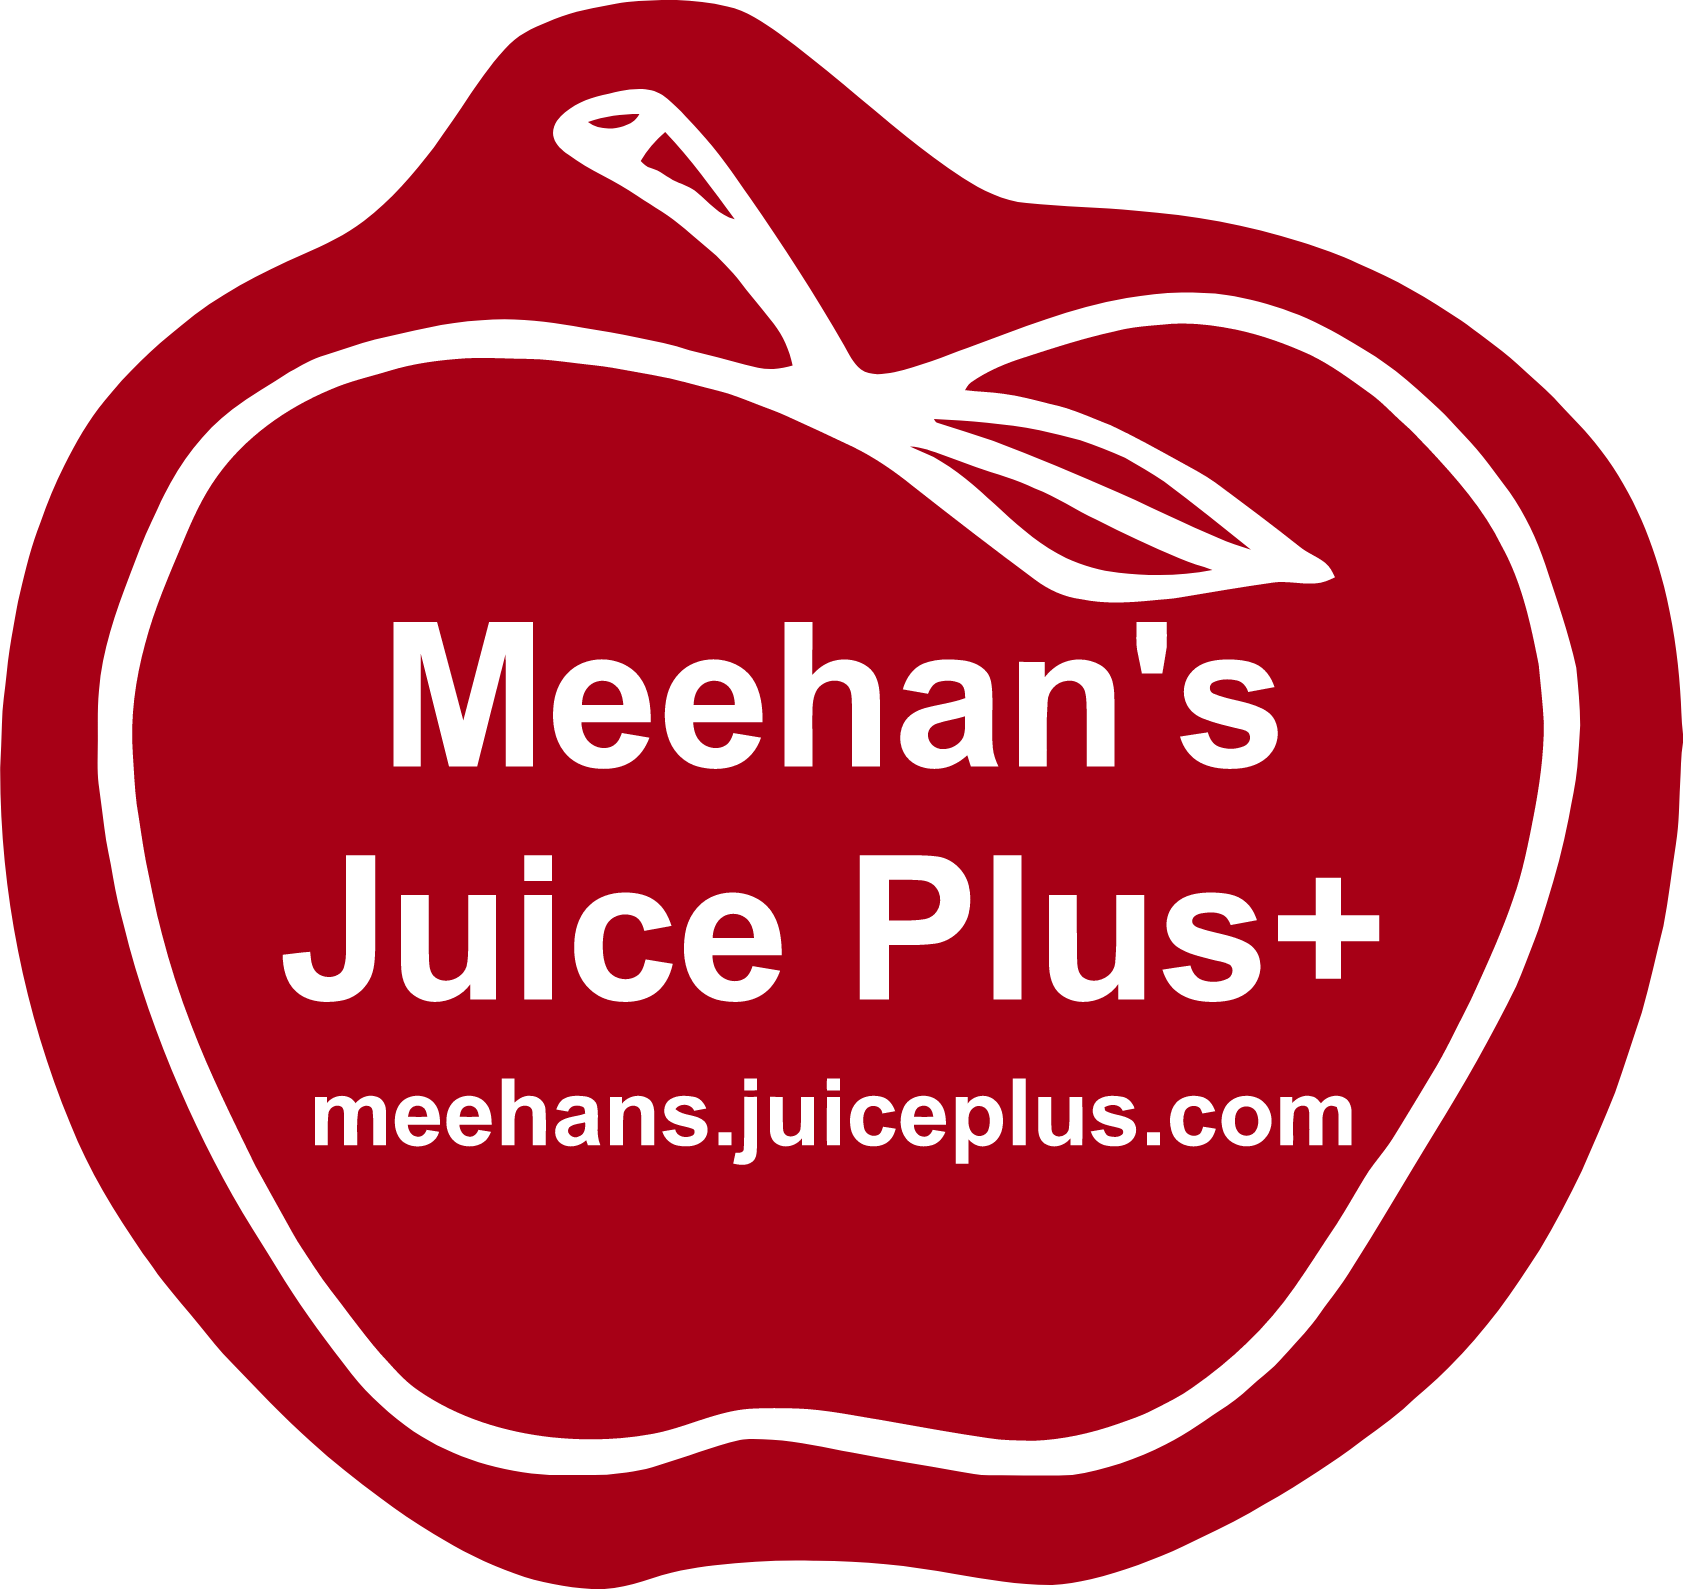 Meehan's Juice Plus